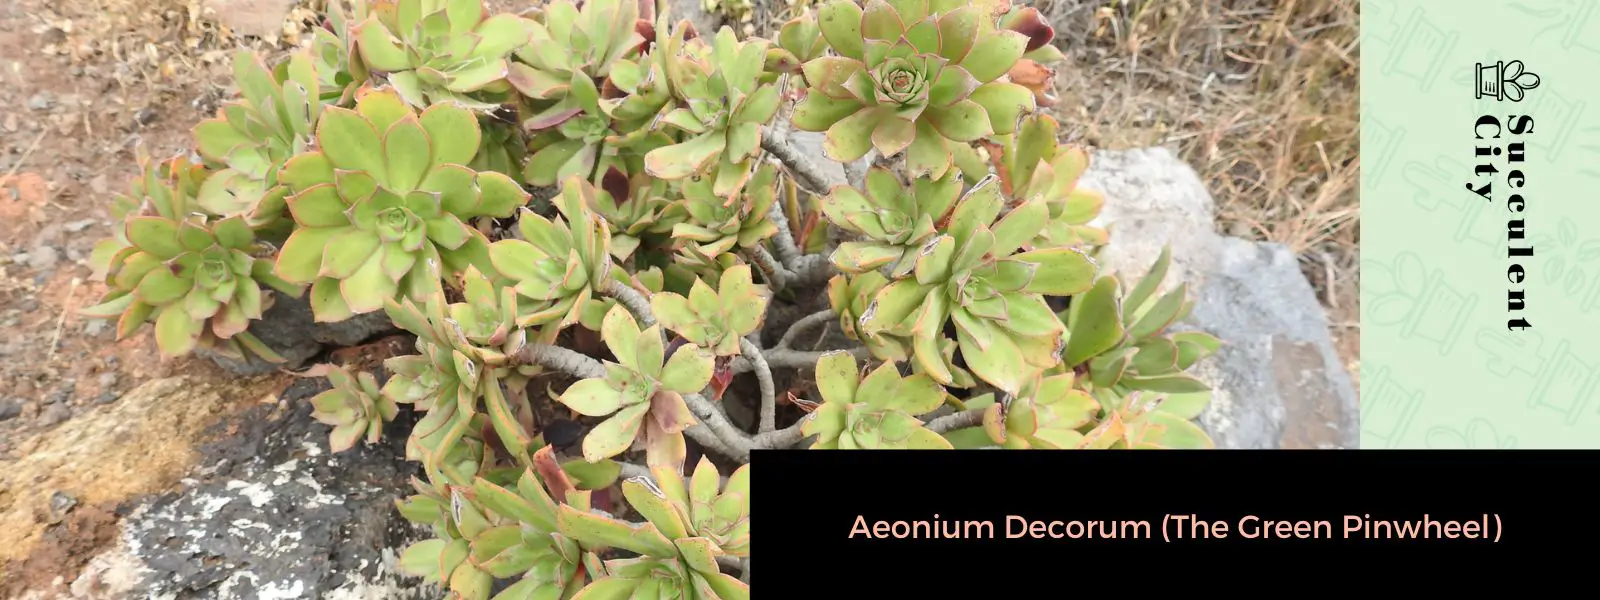 Aeonium Decorum (El molinete verde)